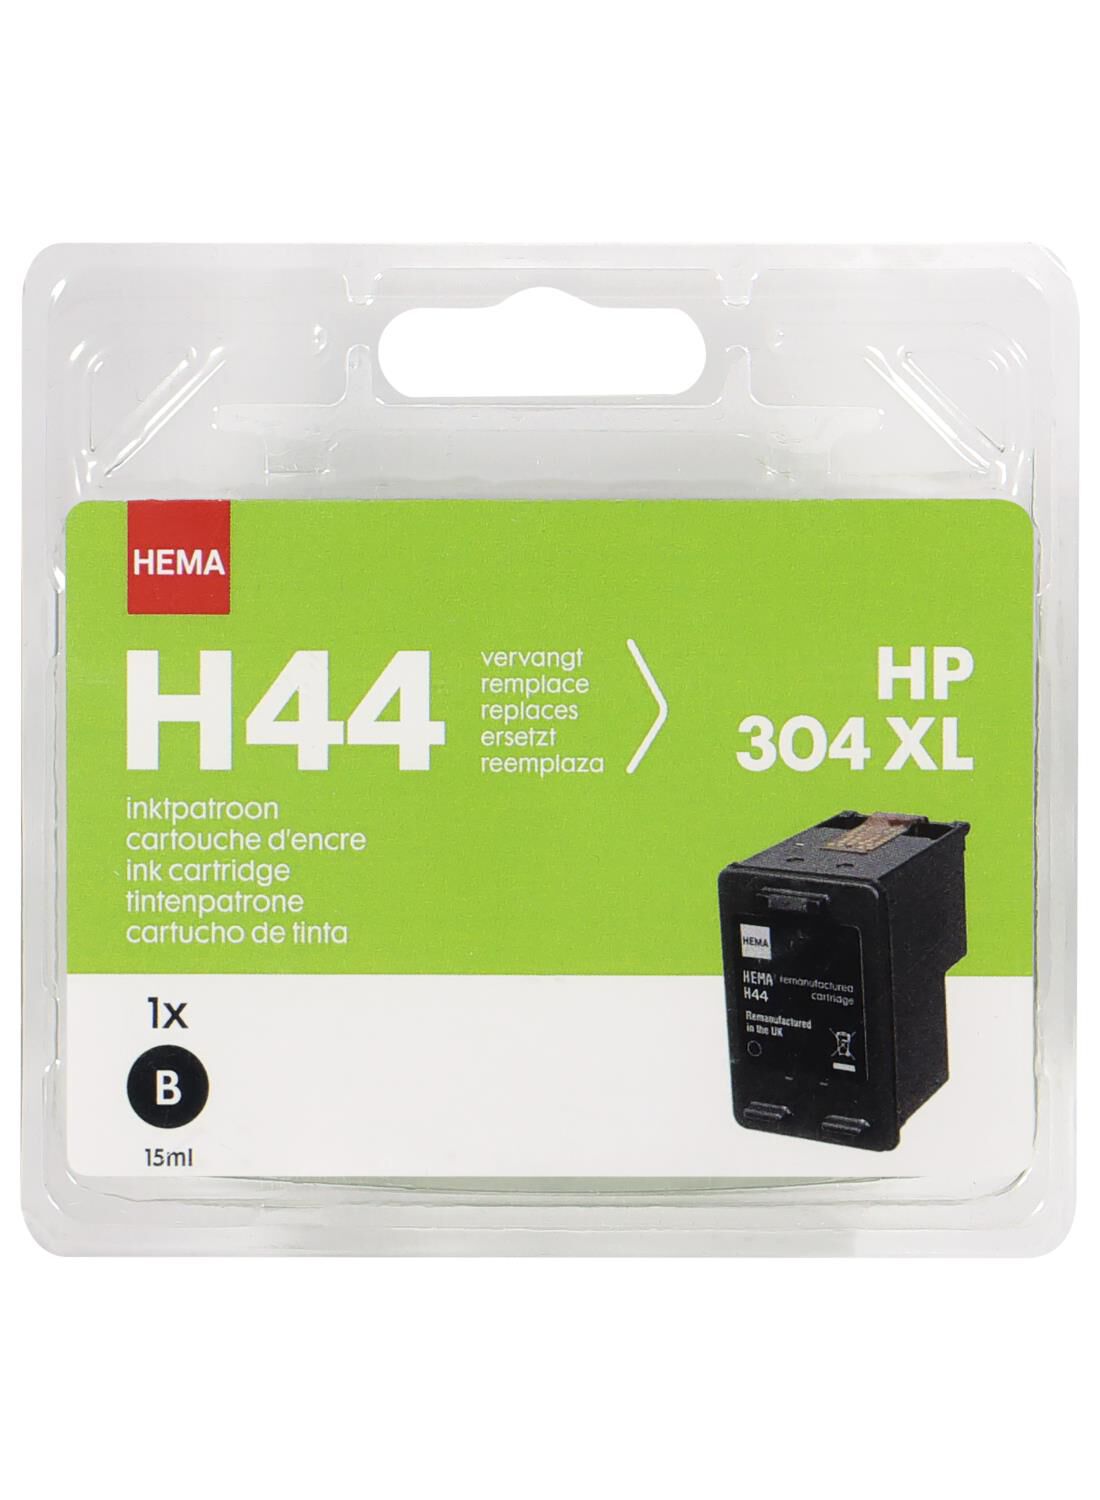 HEMA H44 zwart vervangt HP 304XL zwart - HEMA